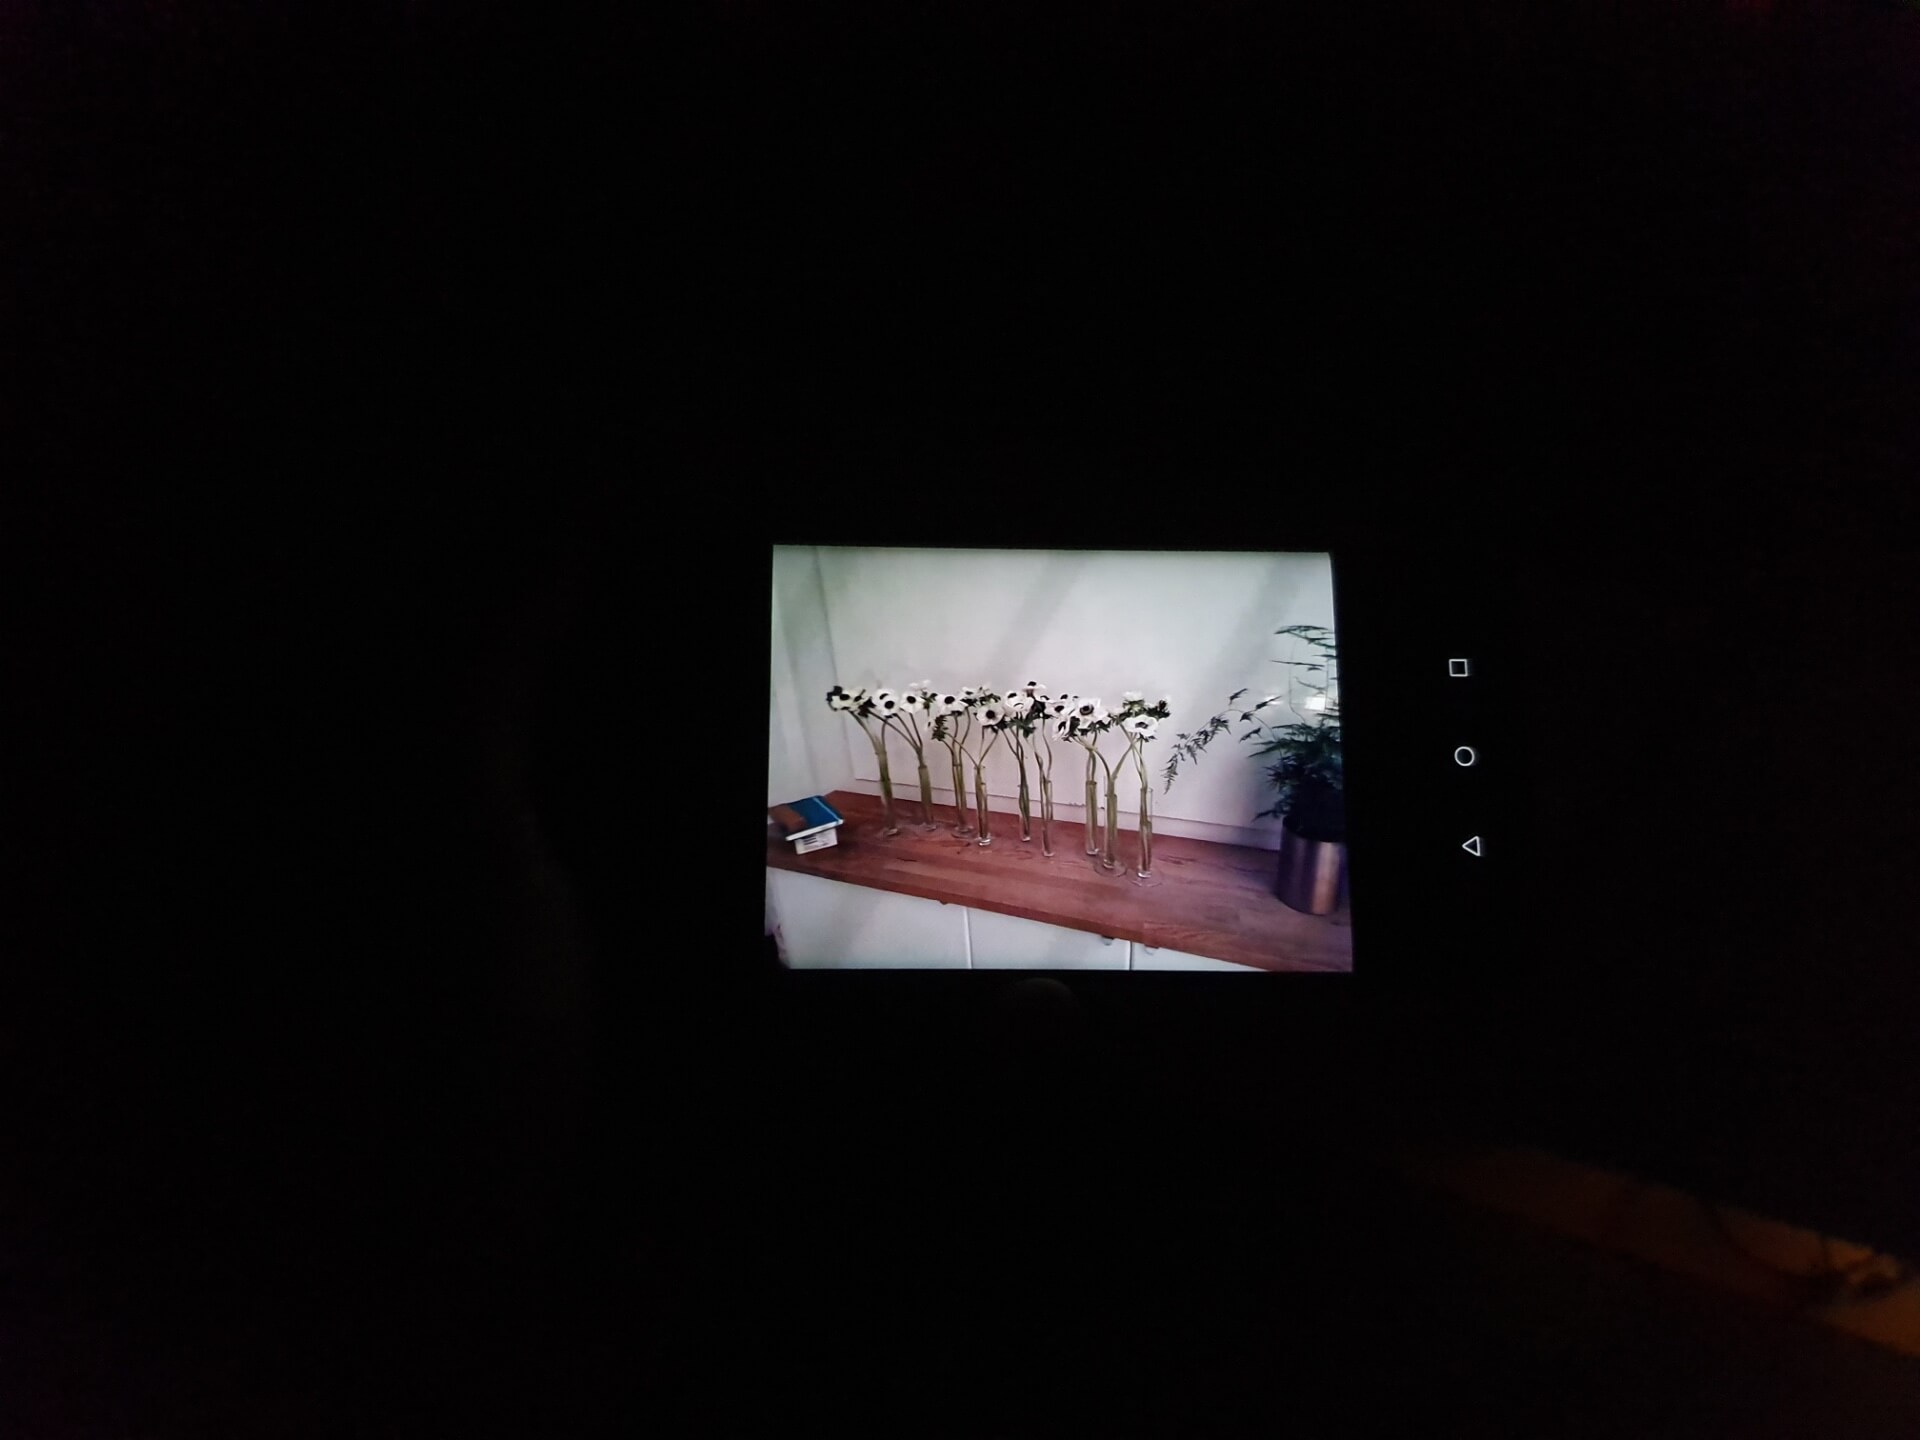 Huawei P30 Pro пример фото в абсолютной темноте